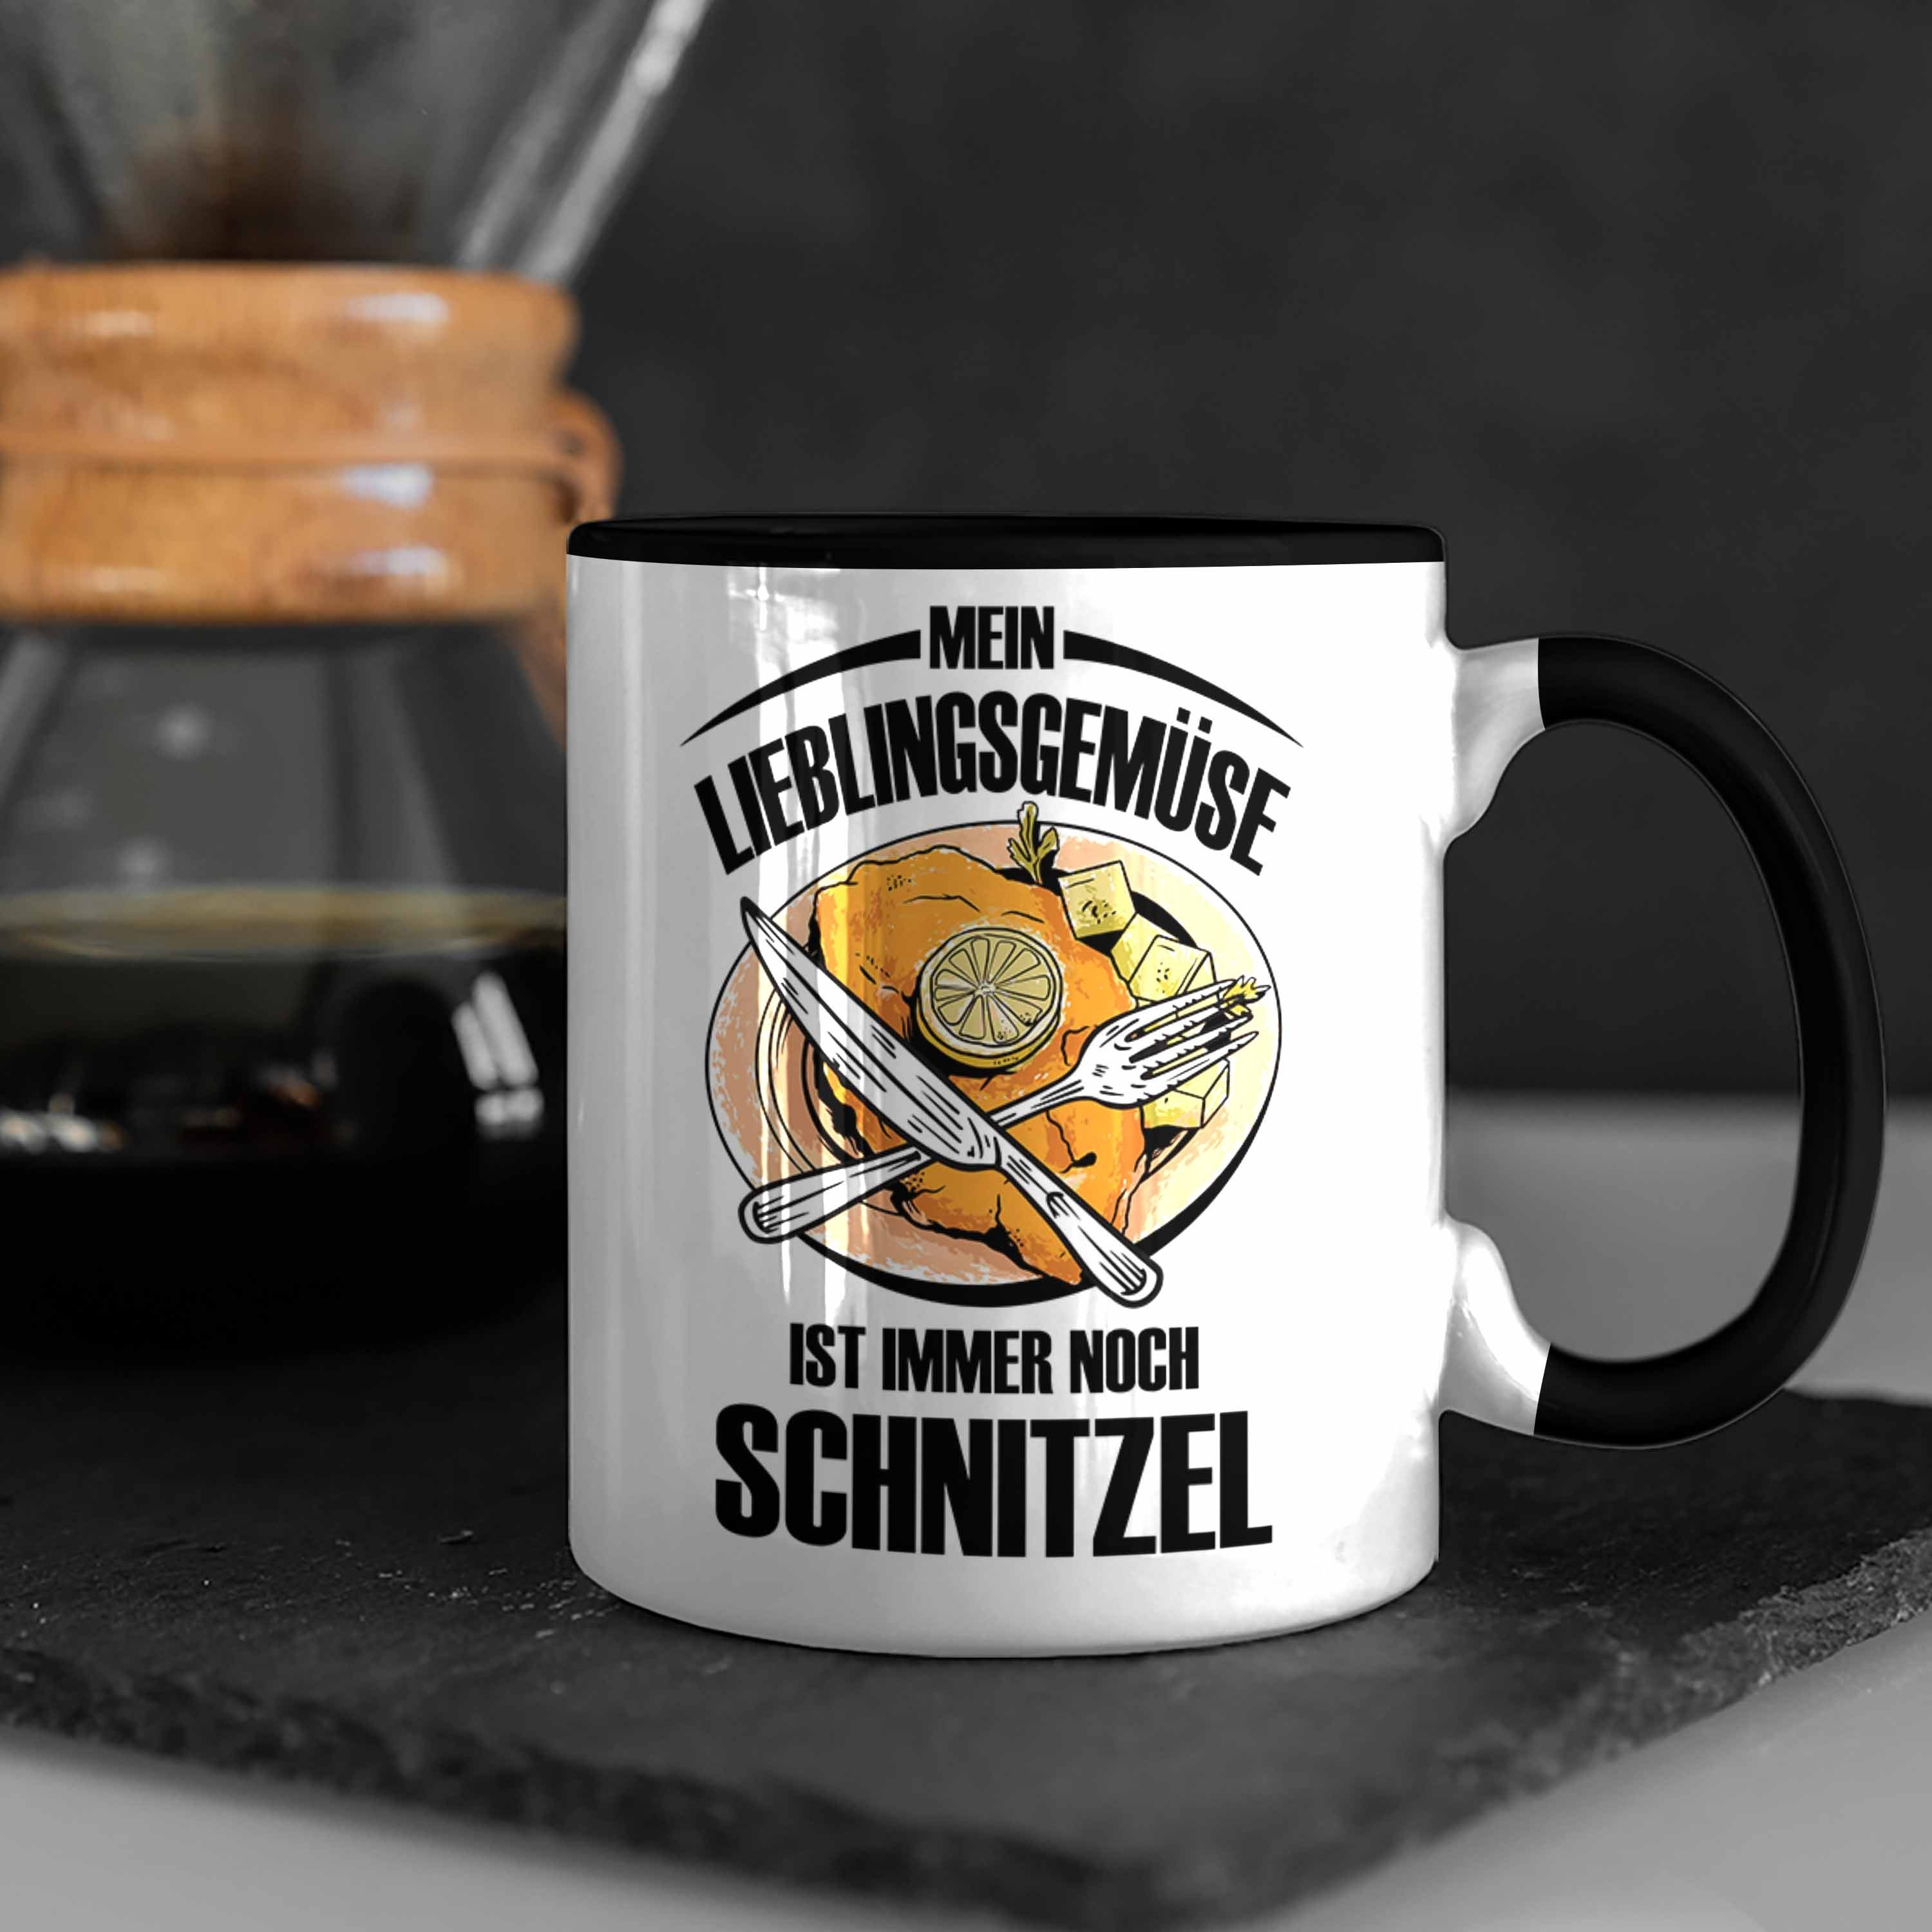 Trendation Tasse Schnitzel-Tasse Geschenk Schwarz für Schnitzel-Liebhaber Lieblingsgemüse Mein